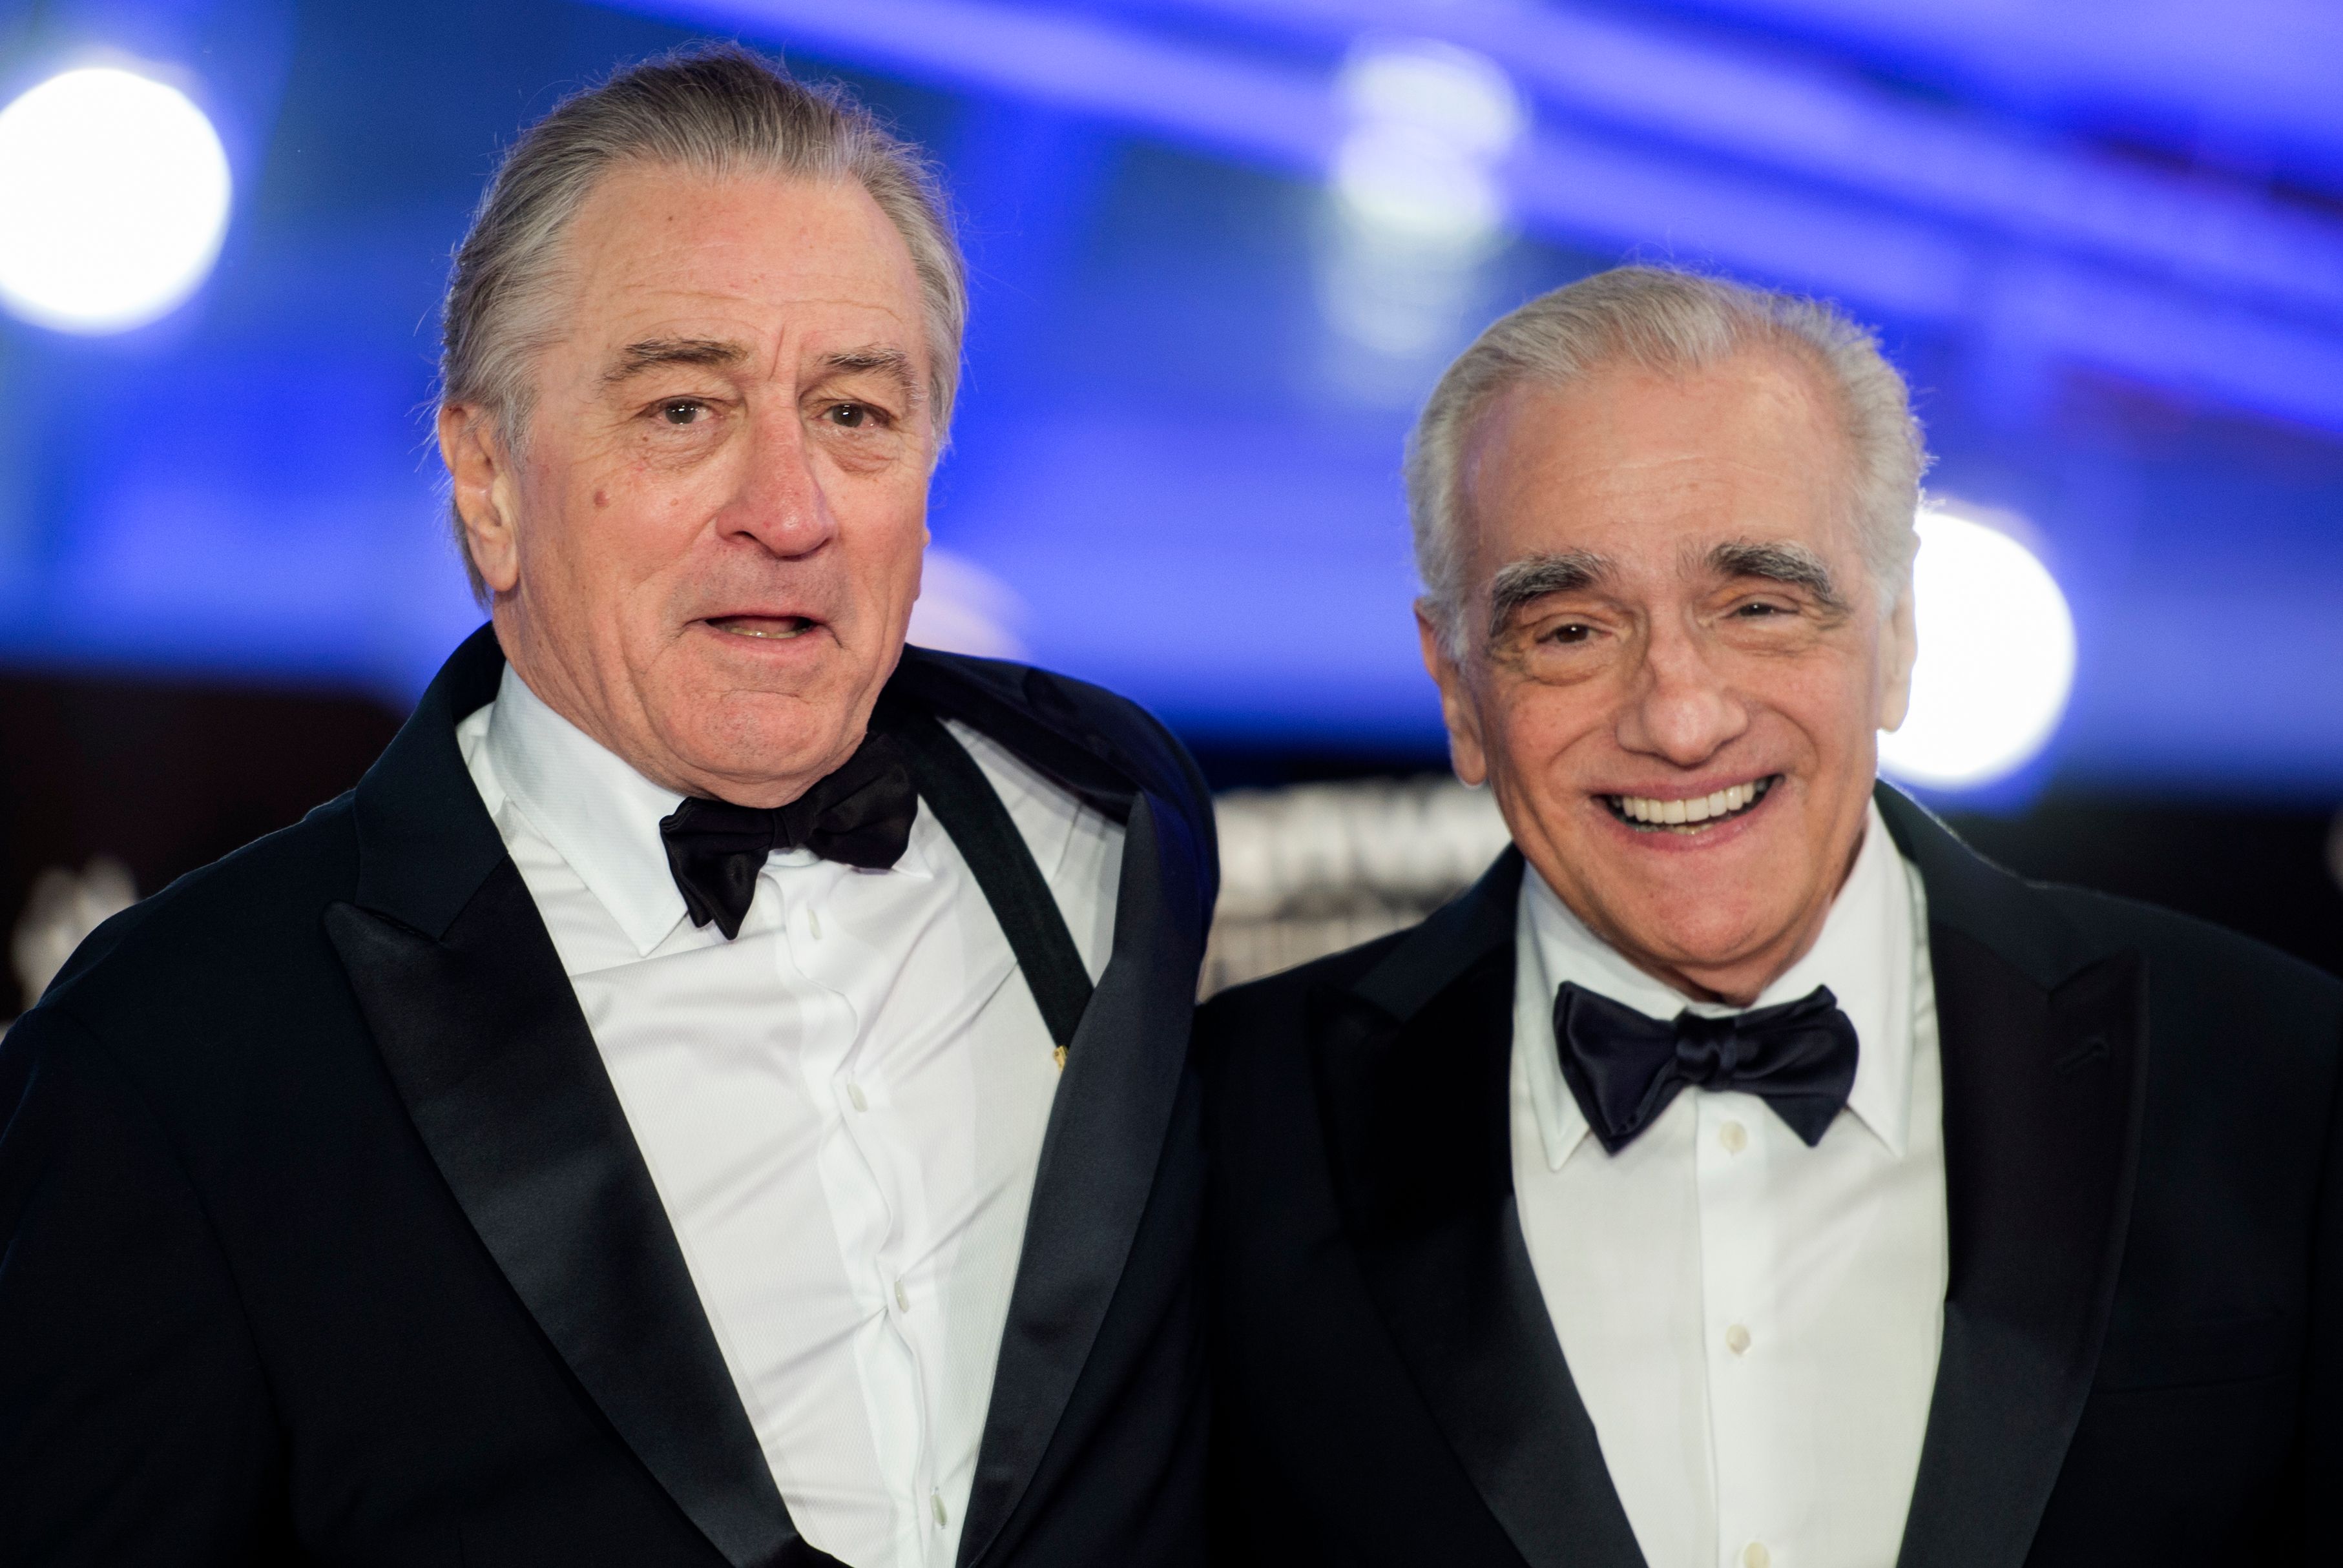 El actor estadounidense Robert De Niro y el director de cine estadounidense Martin Scorsese, en el festival internacional de cine de Marrakech en diciembre de 2018.  (Foto Prensa Libre: AFP)